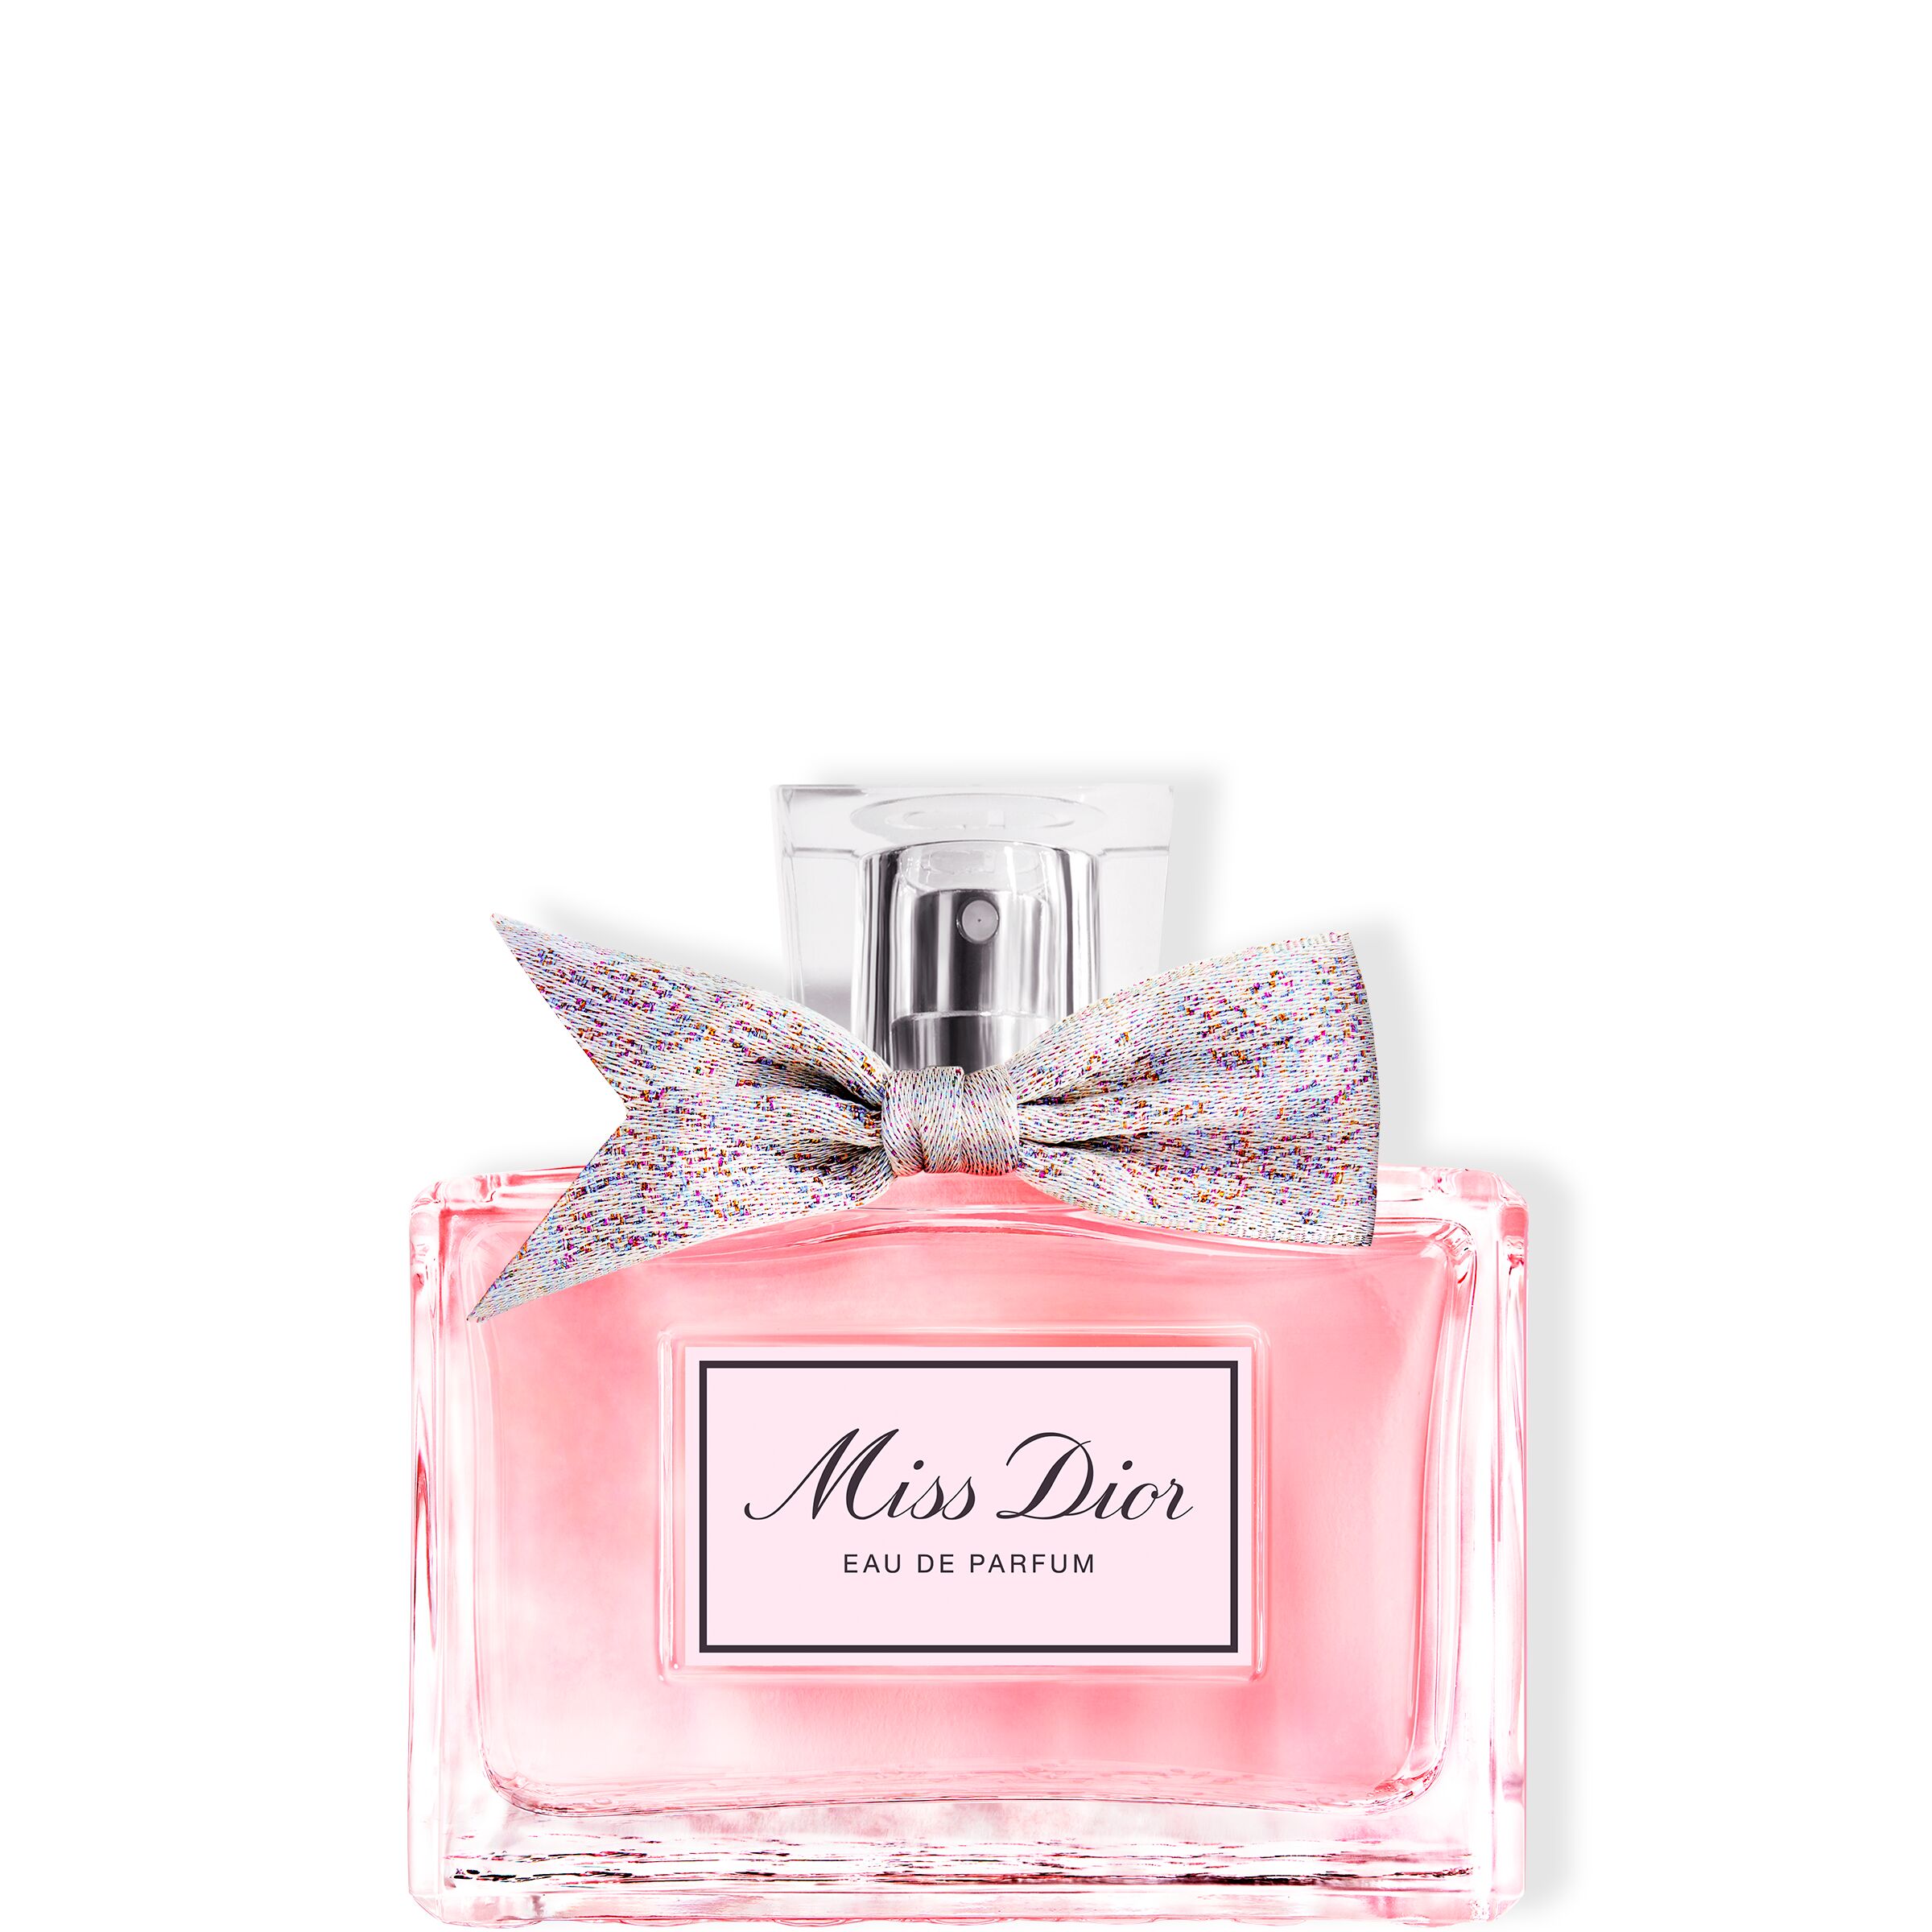  Miss Dior Eau de Parfum